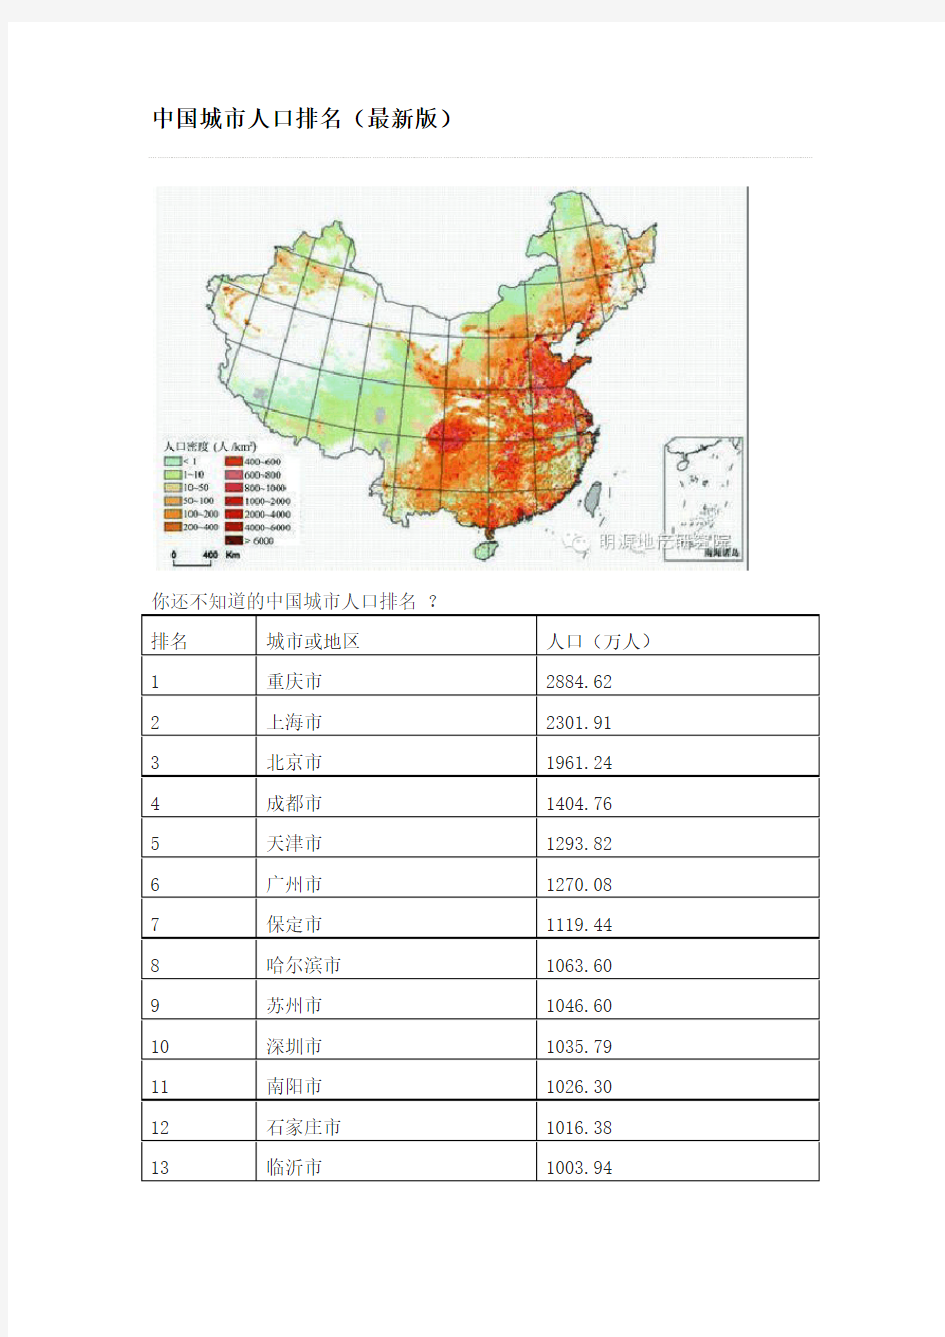 中国城市人口排名(2014年4月最新版)